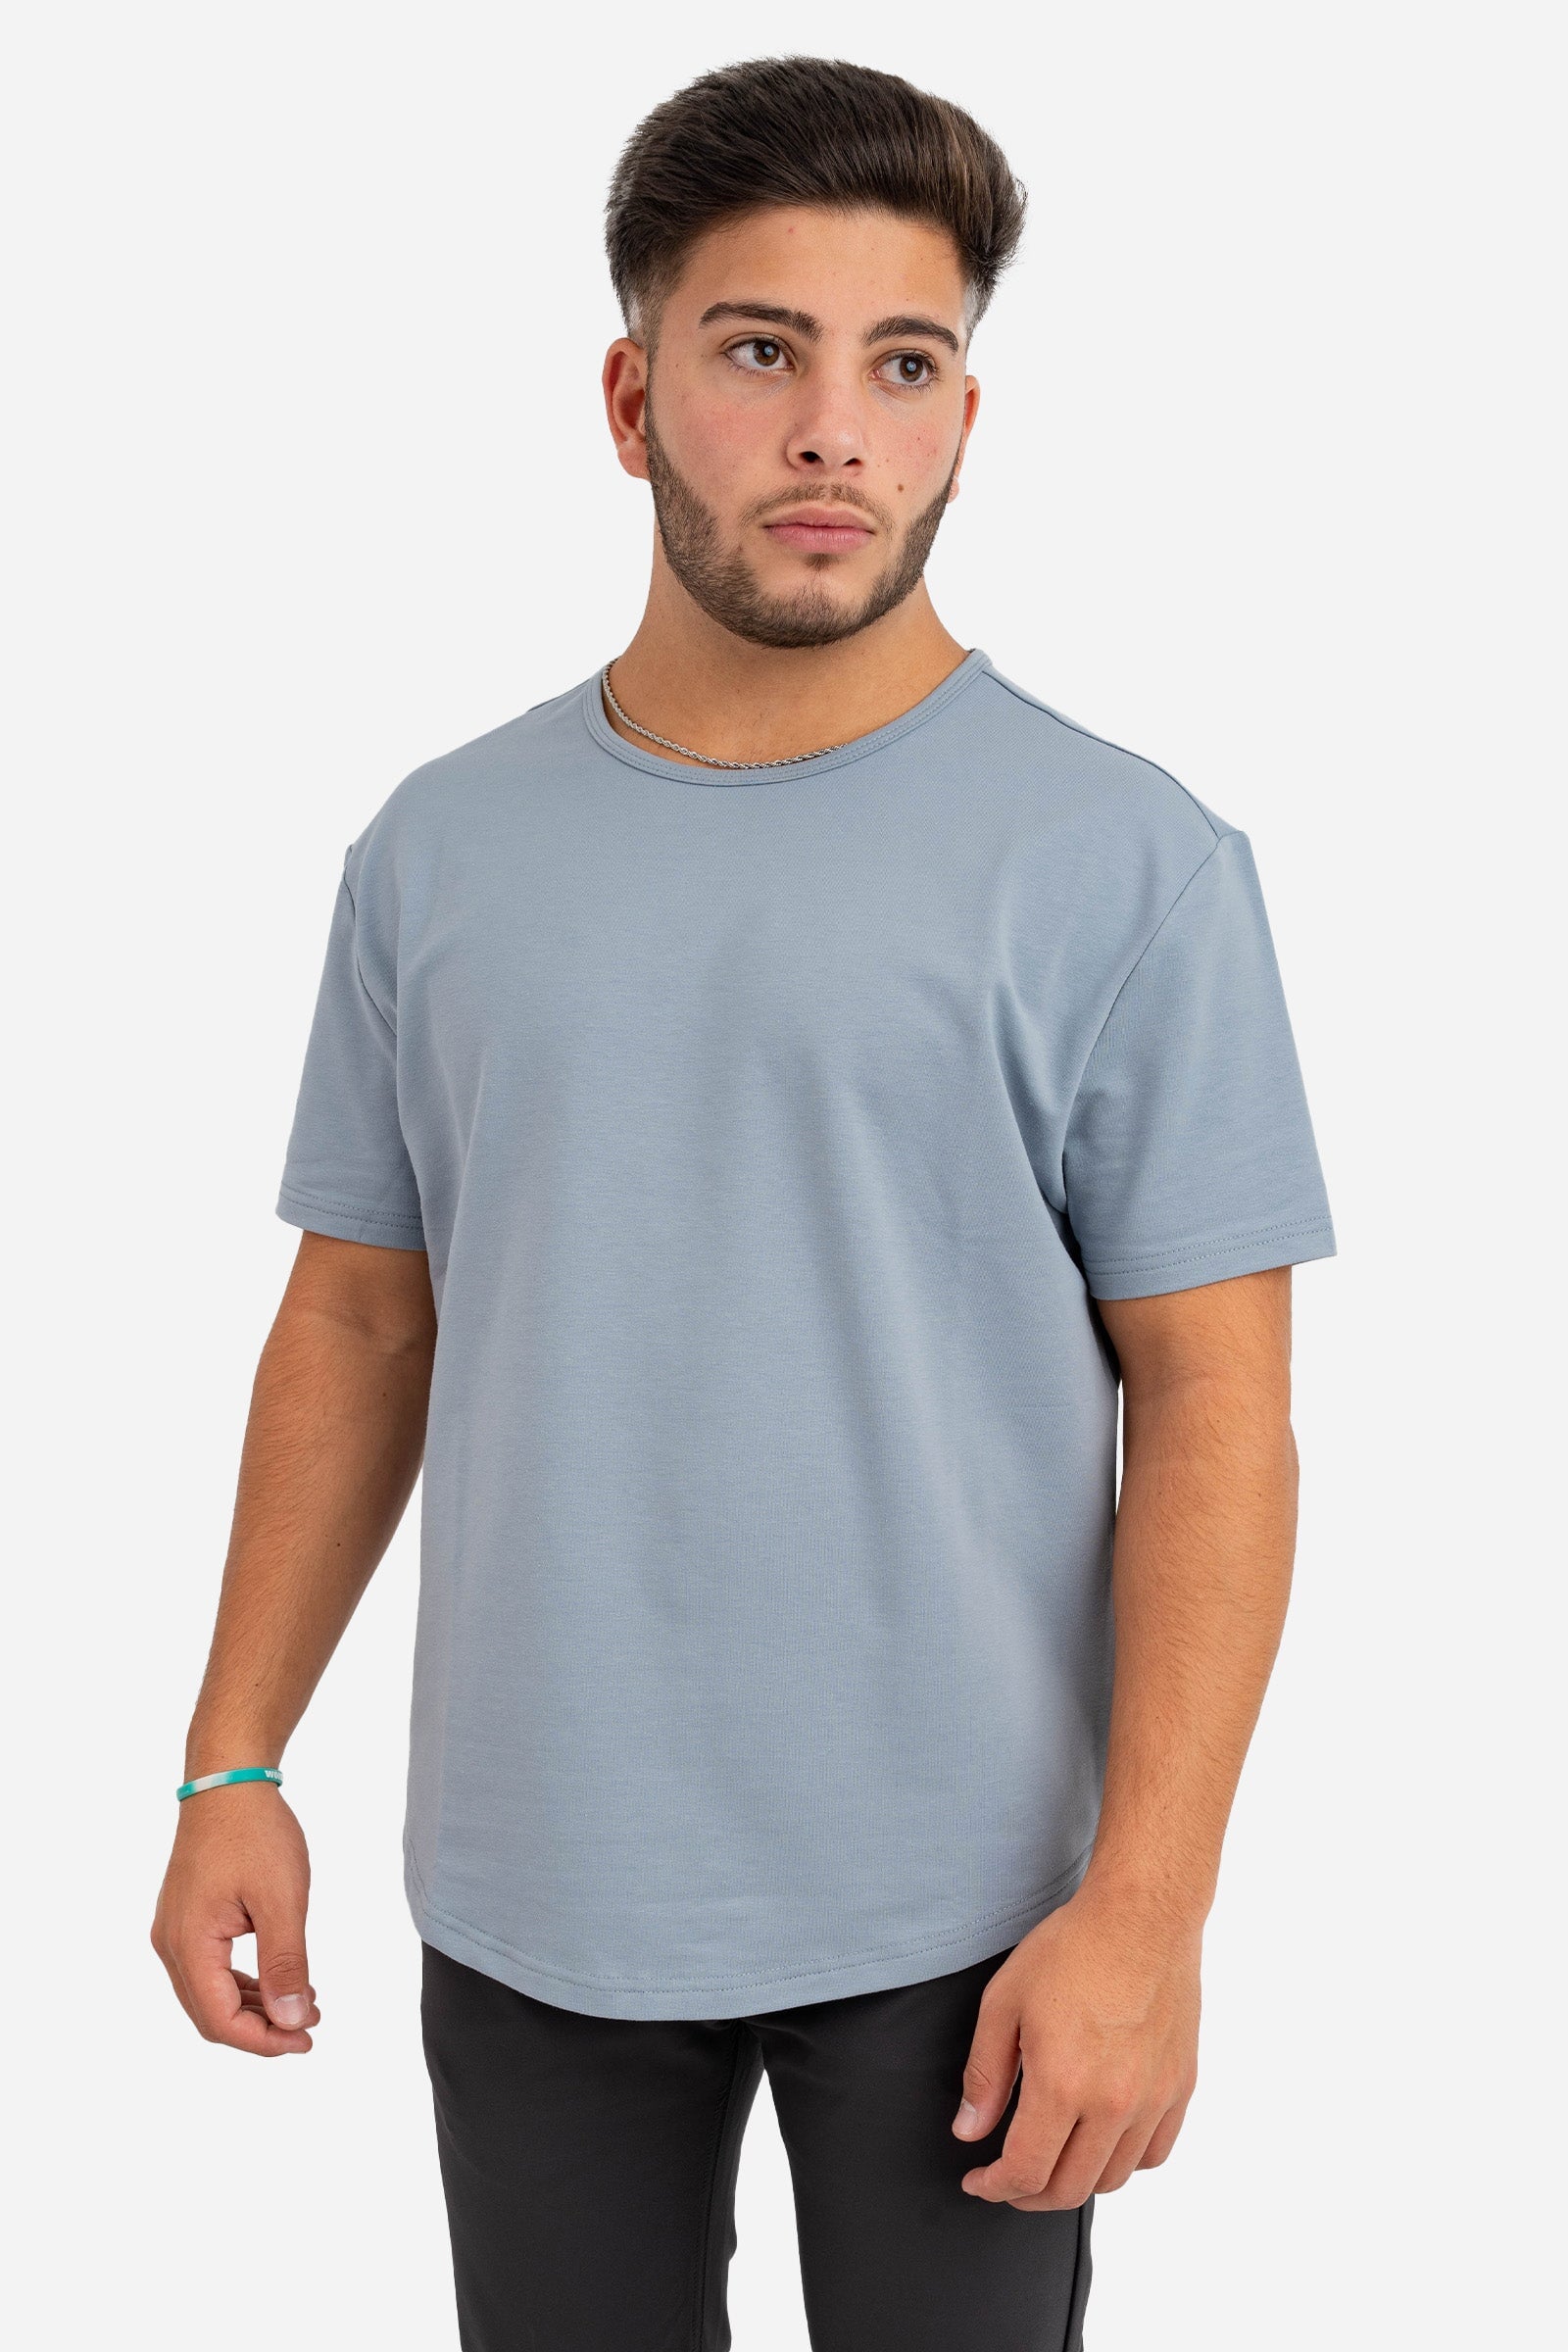 T-Shirts for Short Men | Under 510 – Under 5'10